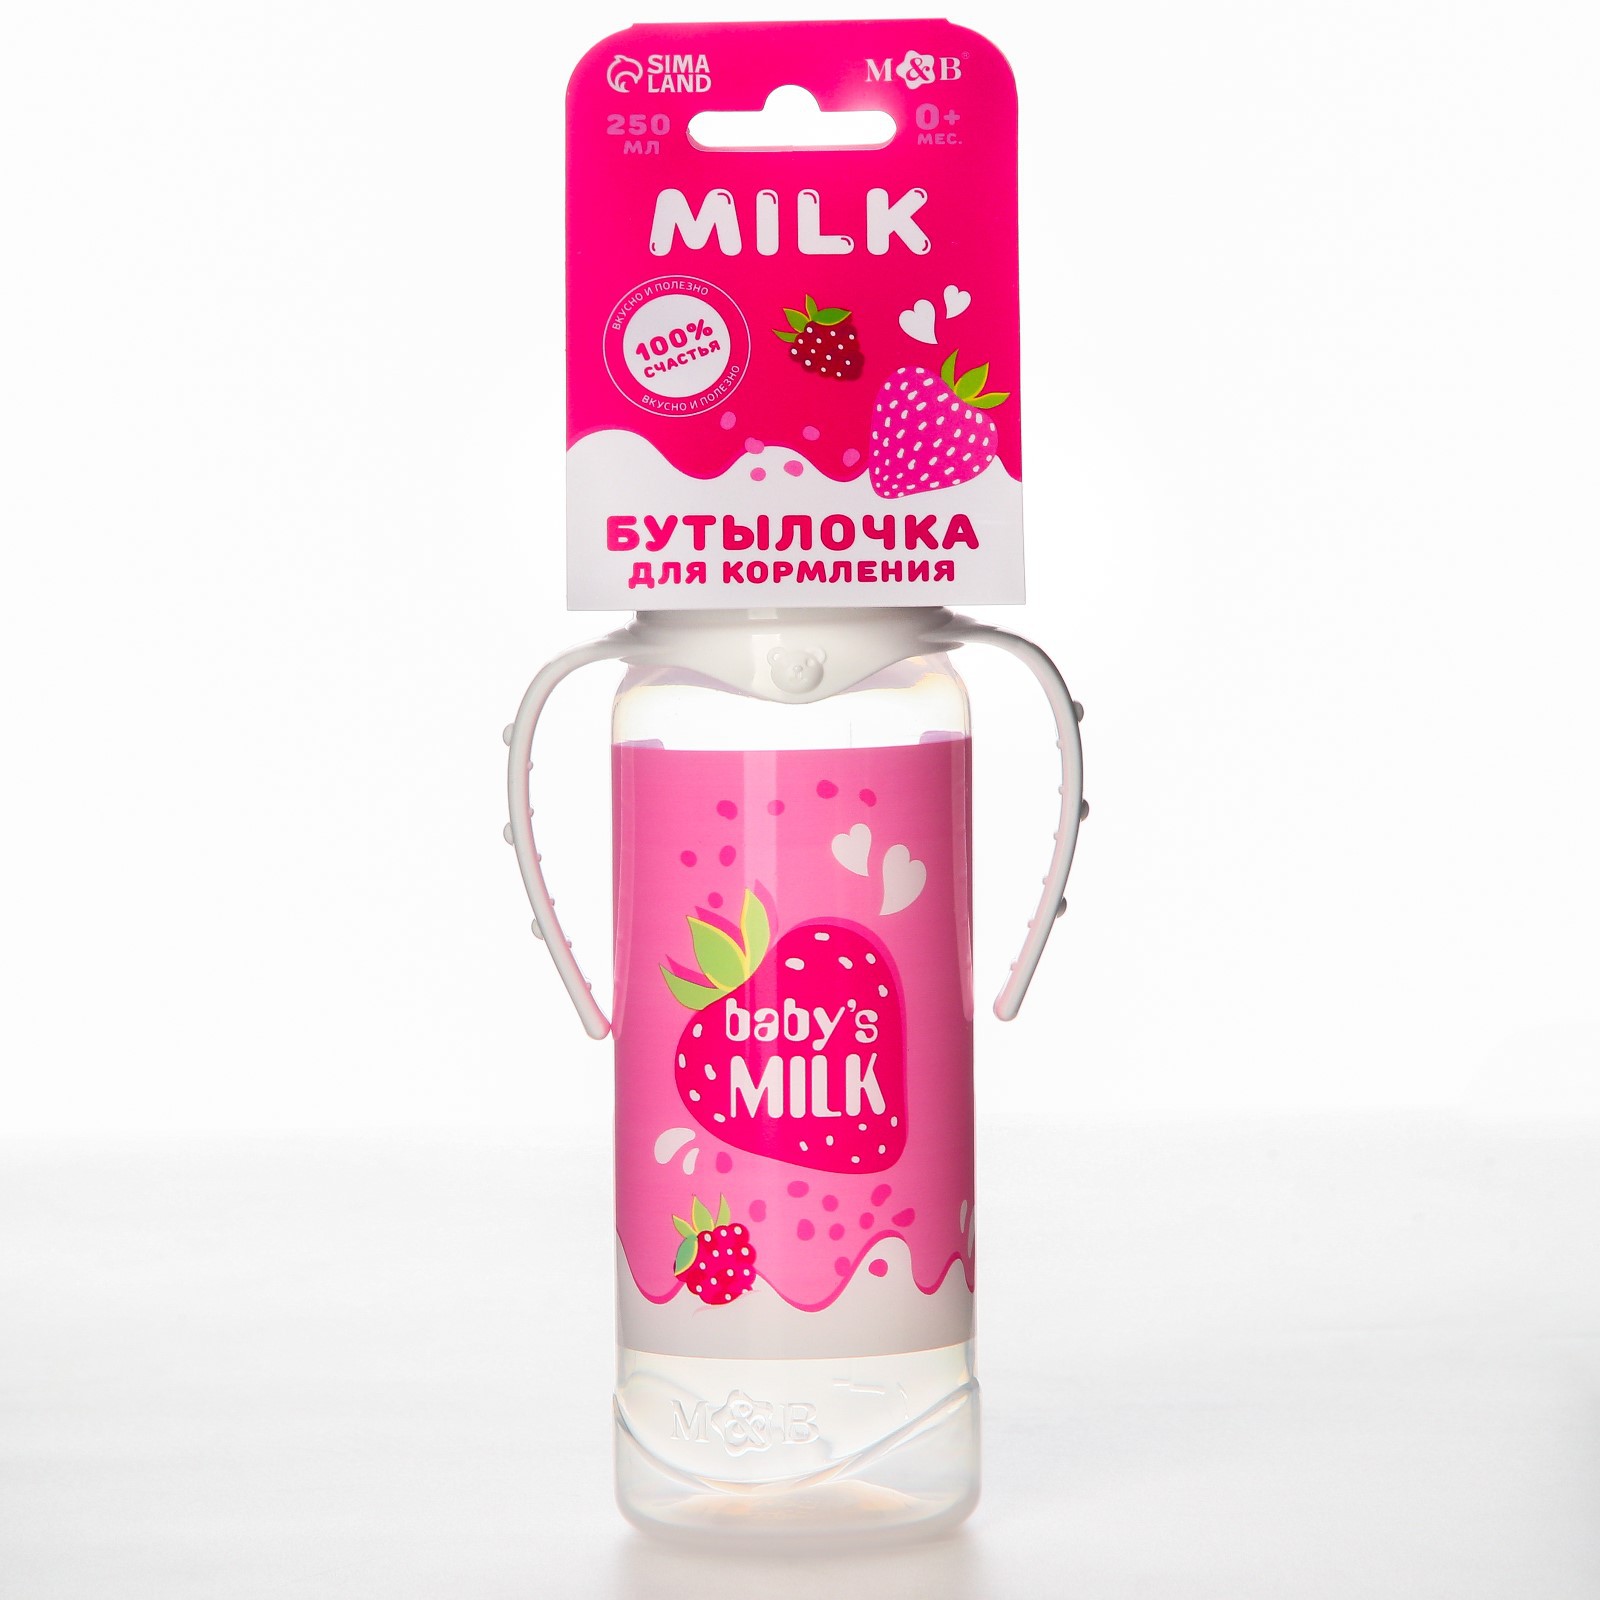 Бутылочка Mum and Baby для кормления «Клубничное молоко» 250 мл цилиндр с ручками - фото 5